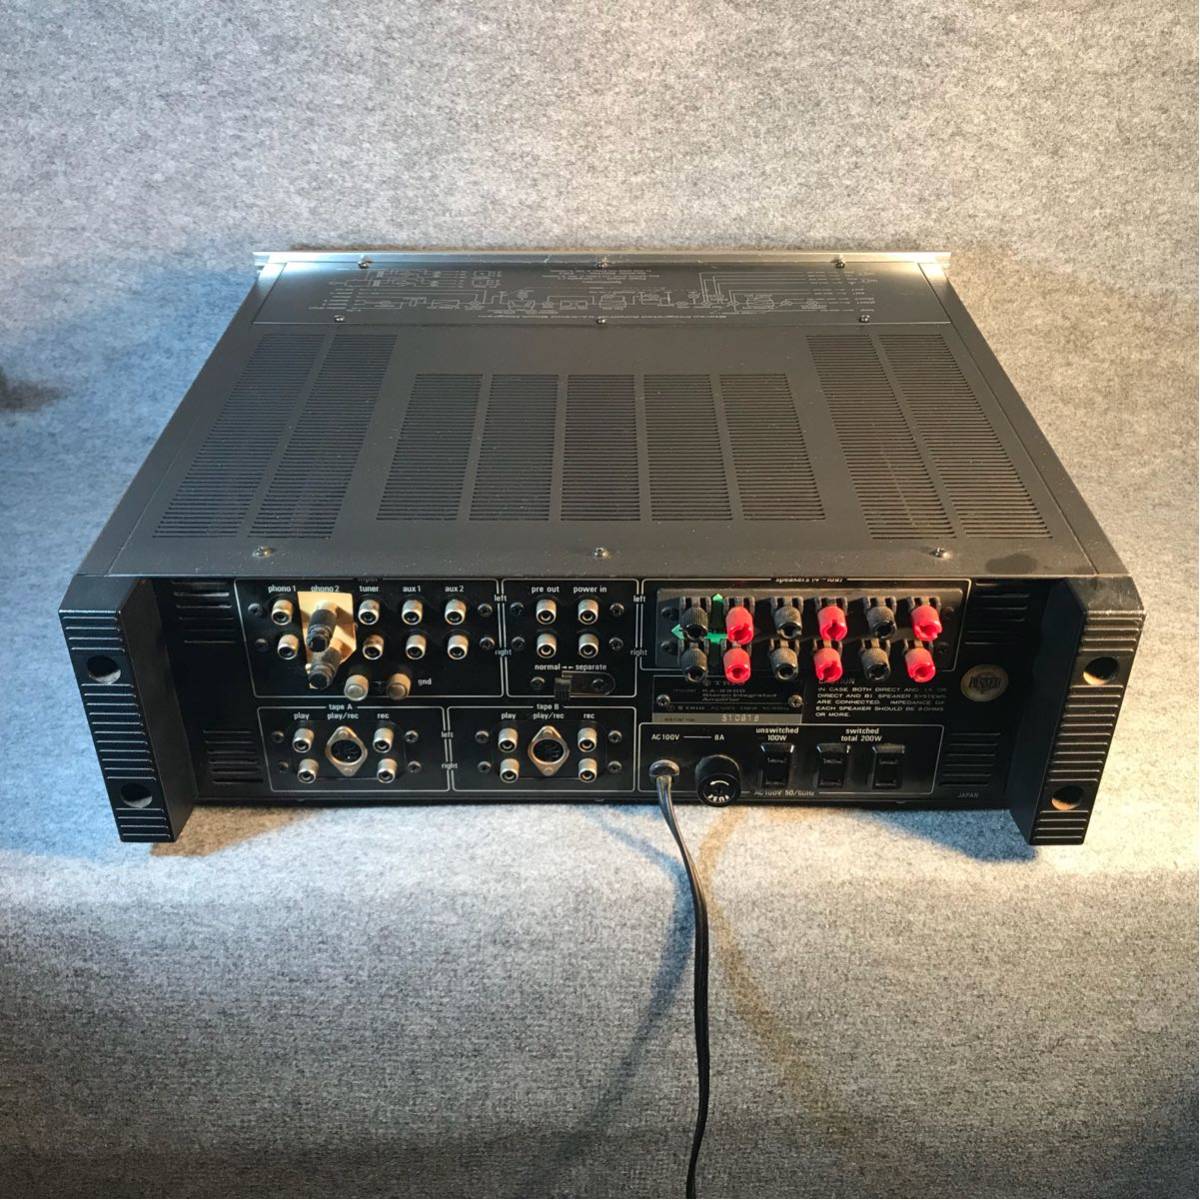  原文:TRIO トリオ プリメンインアンプ Stereo Integrated amplifier ka-9300 動作品 ステレオ オーディオ 